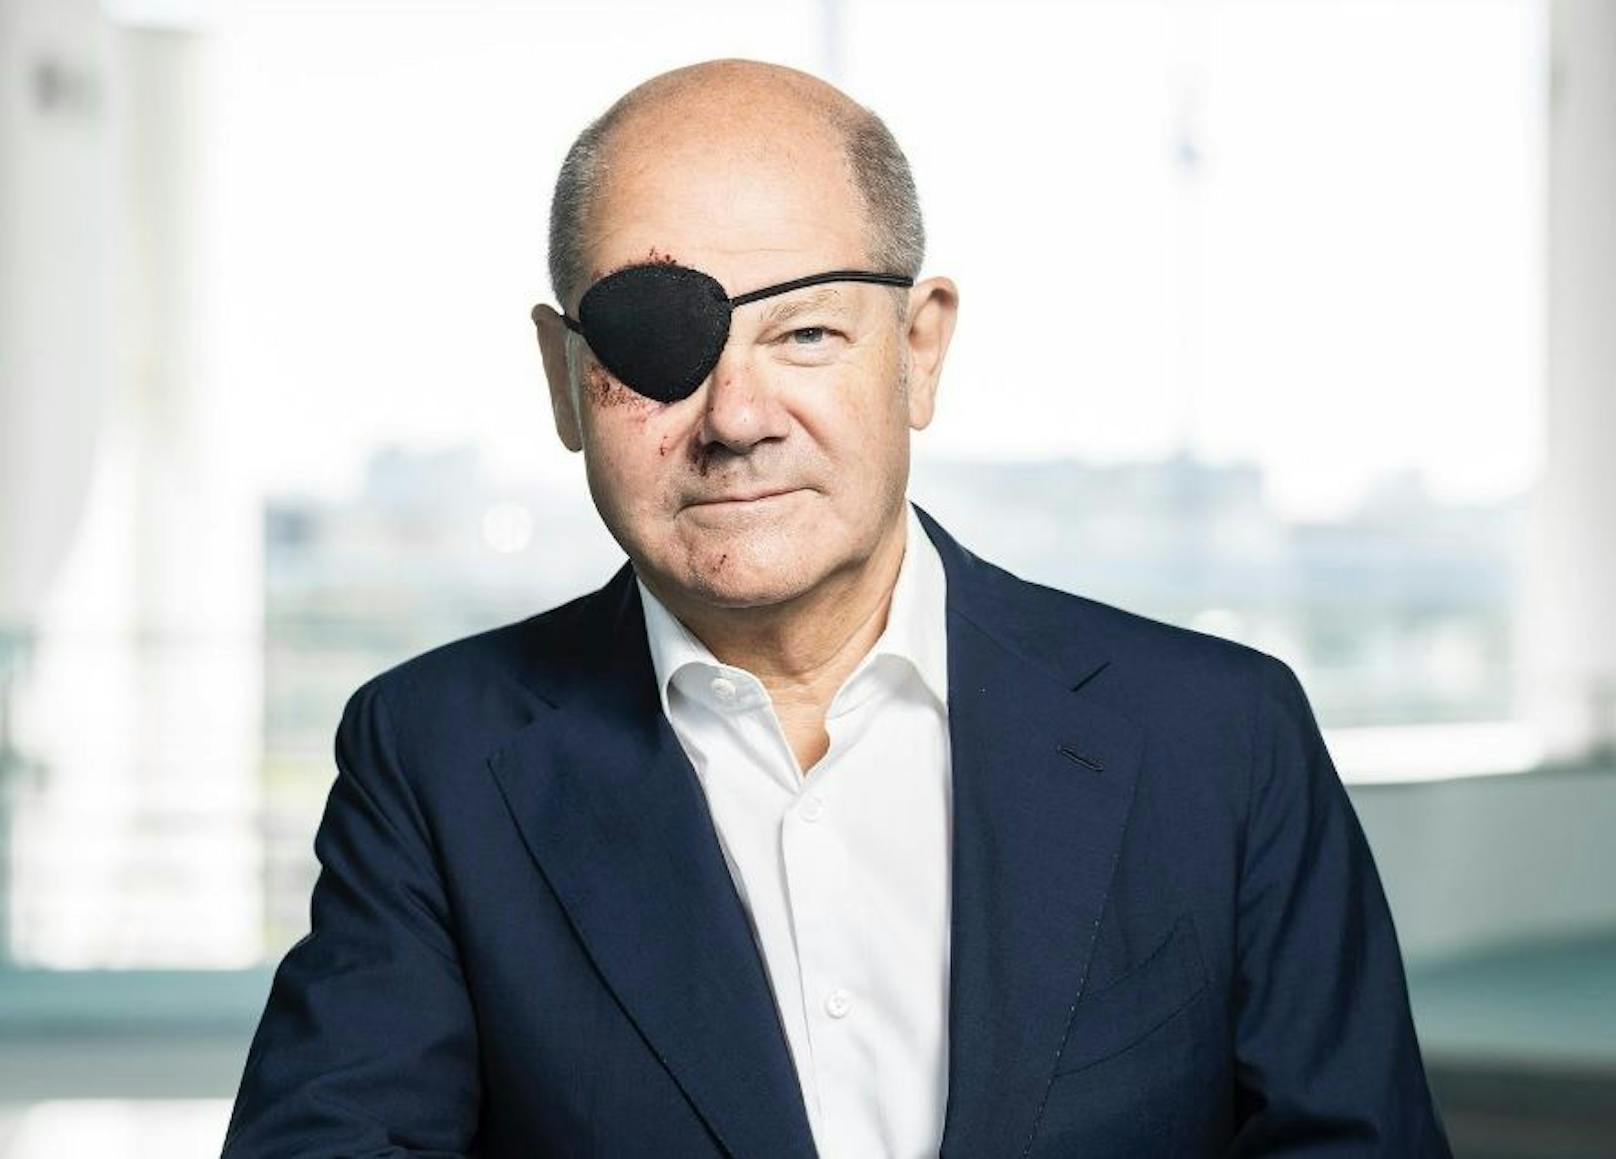 Der deutsche Kanzler Olaf Scholz trägt nach einem Sturz beim Joggen eine Augenklappe.